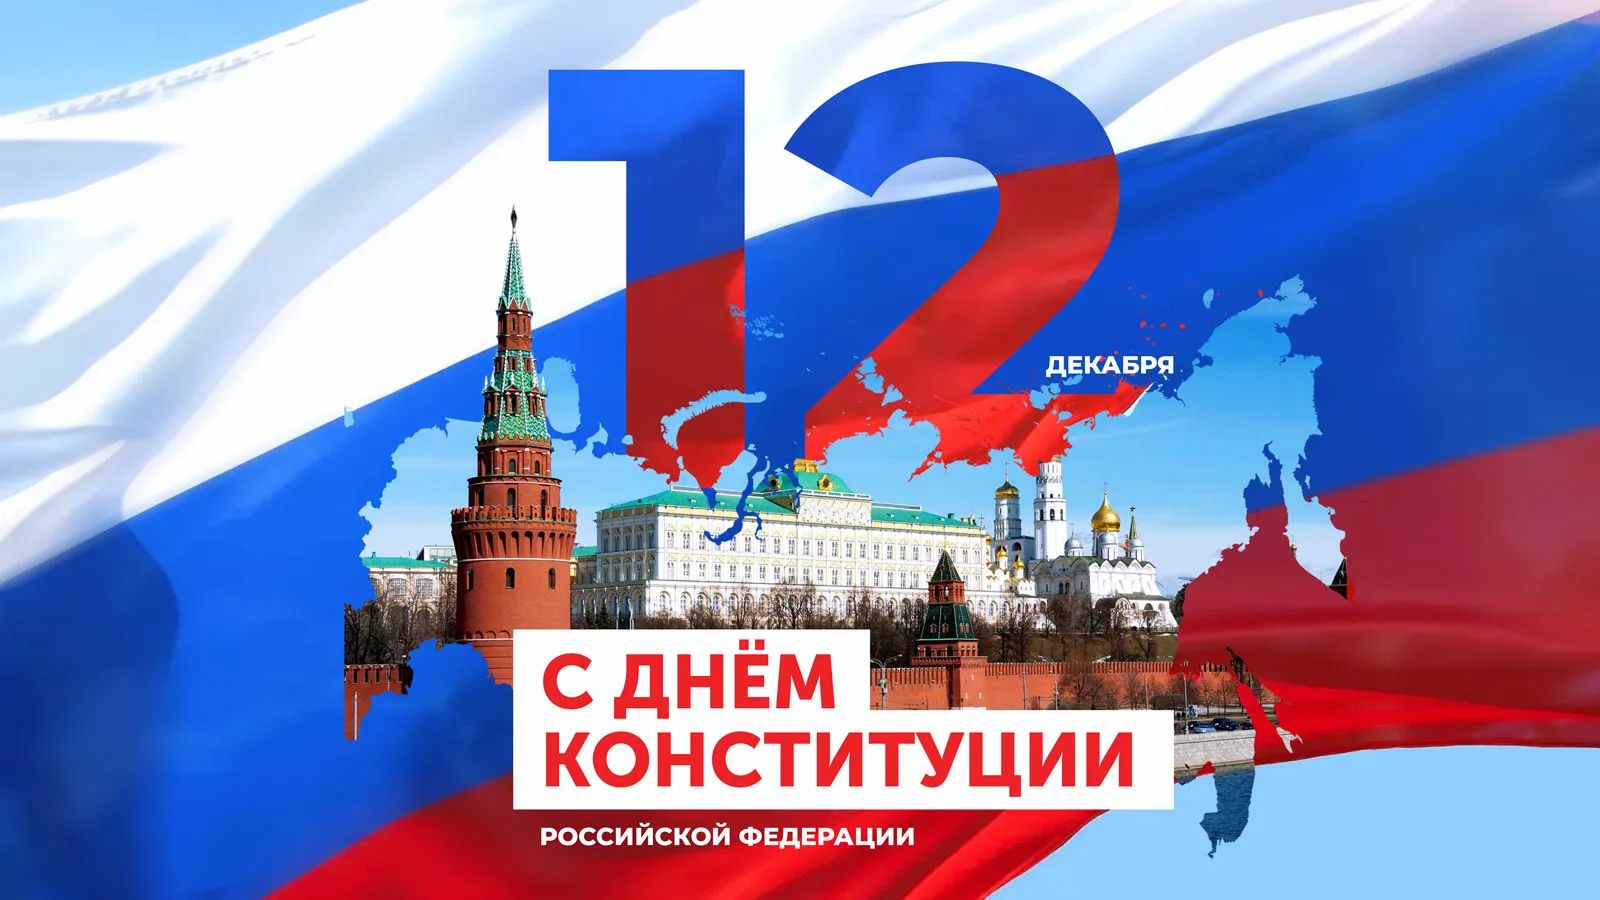 Поздравляем вас с одним из главных государственных праздников - Днём Конституции Российской Федерации!.